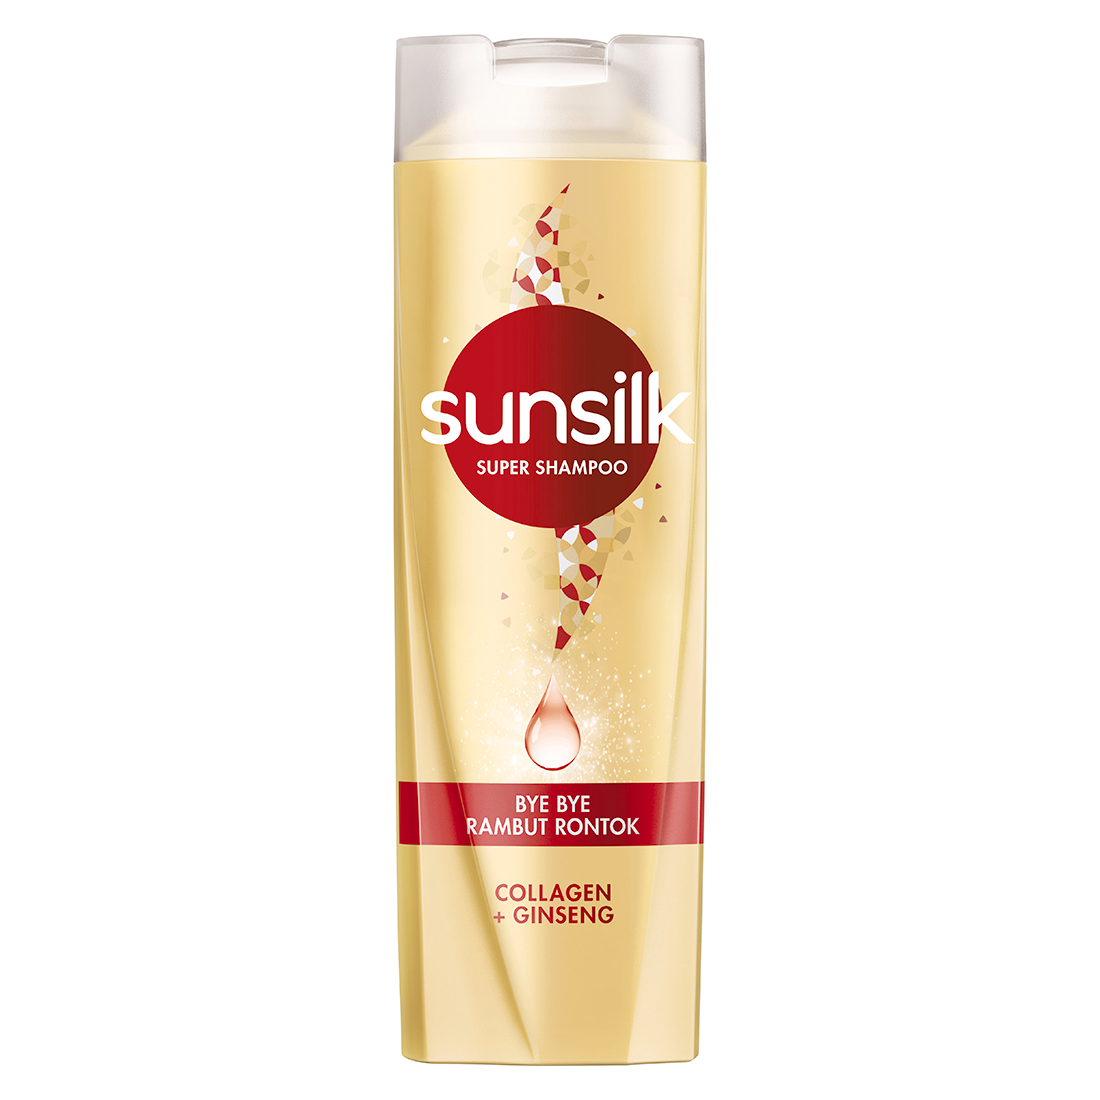 Sunsilk Super Shampoo Bye Bye Rambut Rontok